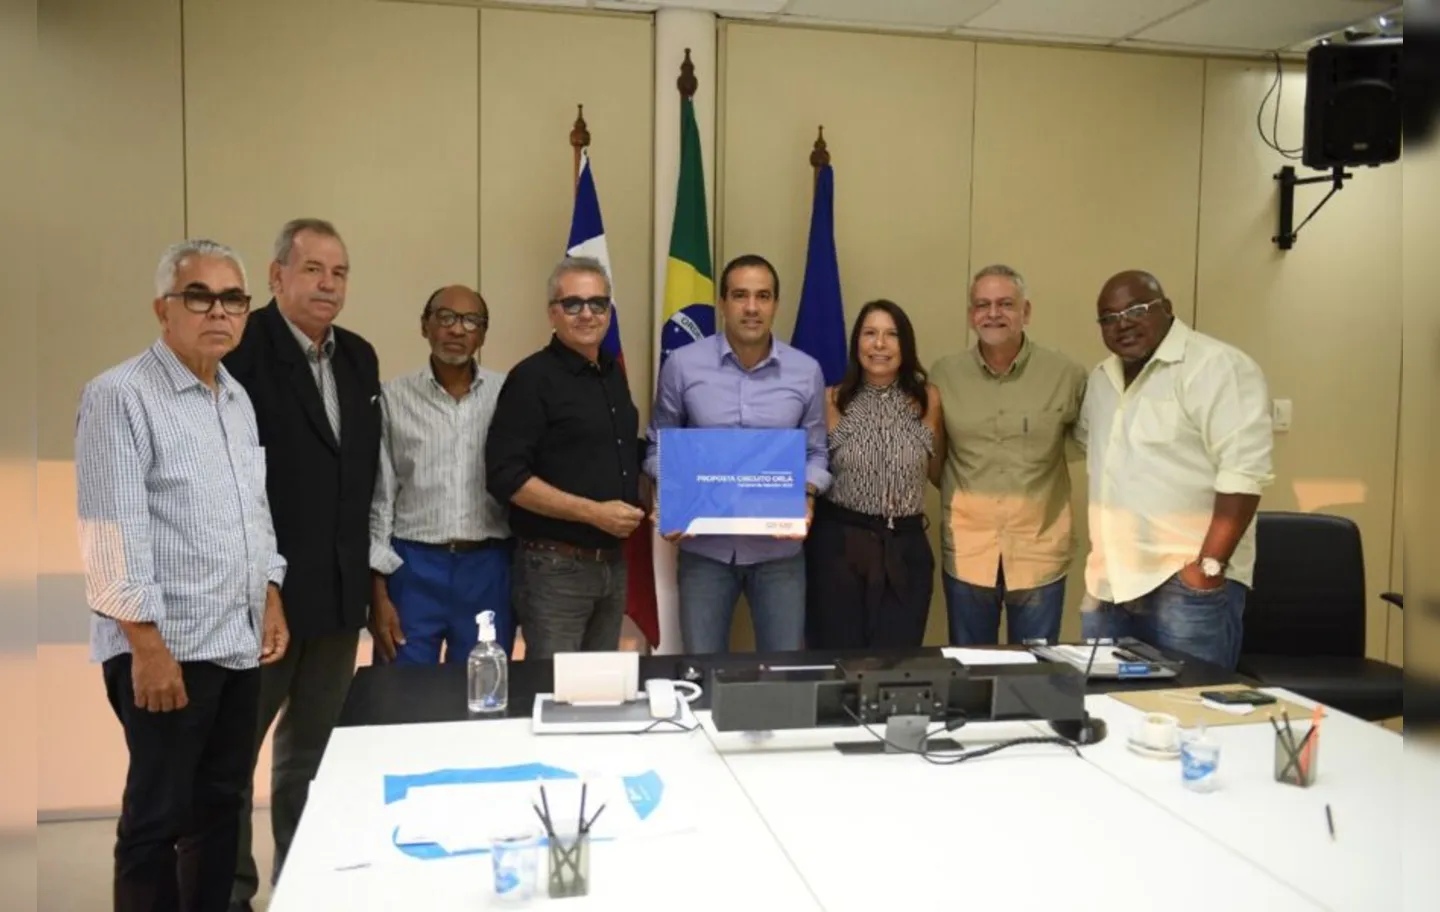 Projeto foi apresentado pelo Comcar à Prefeitura nesta quinta-feira, 18, no Palácio Thomé de Souza